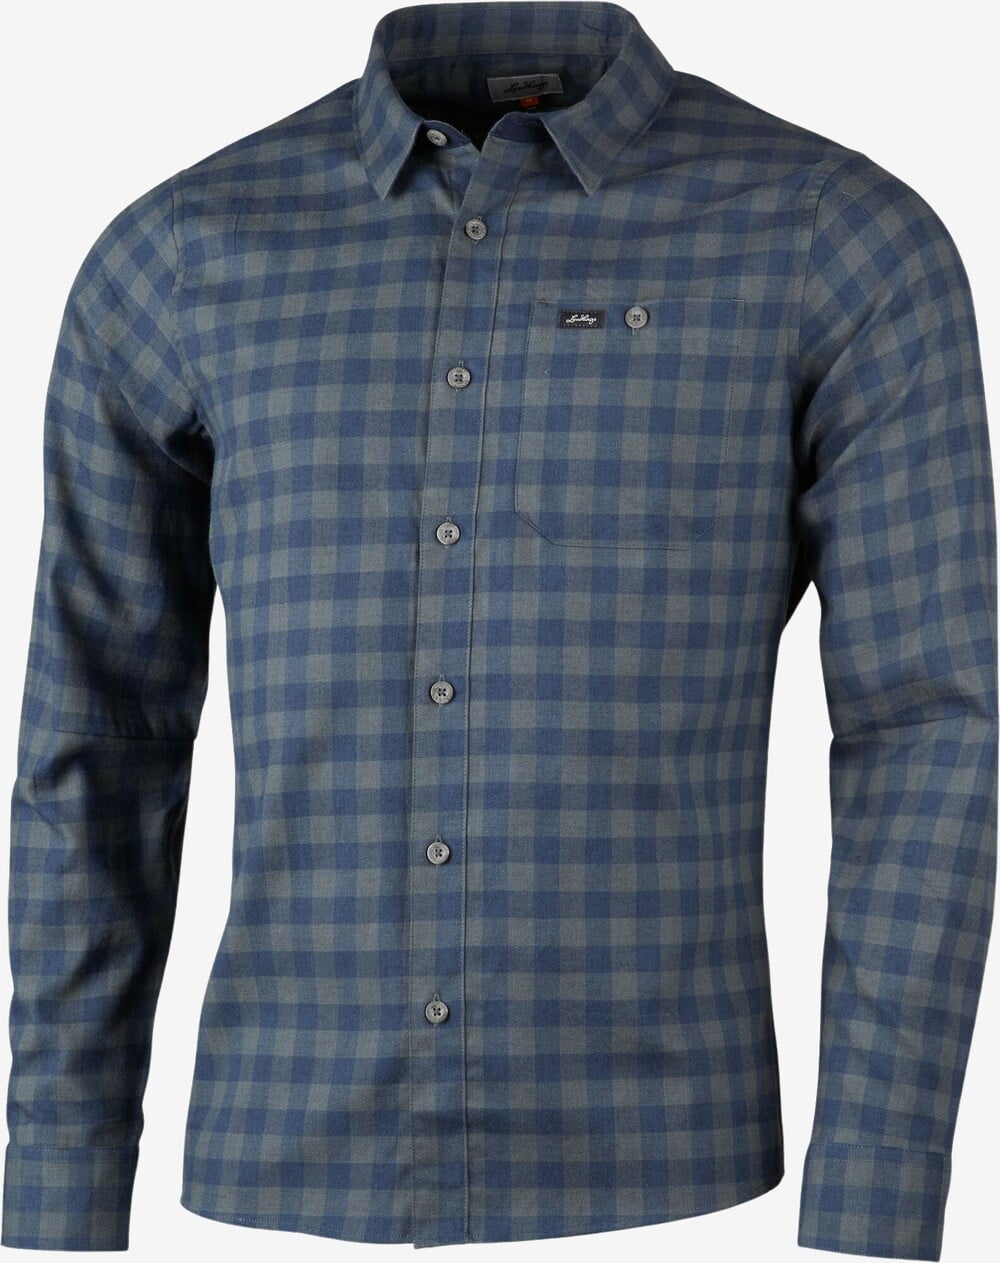 Se Lundhags - Ekren LS skjorte (Deep Blue) - 2XL hos Friluft.dk